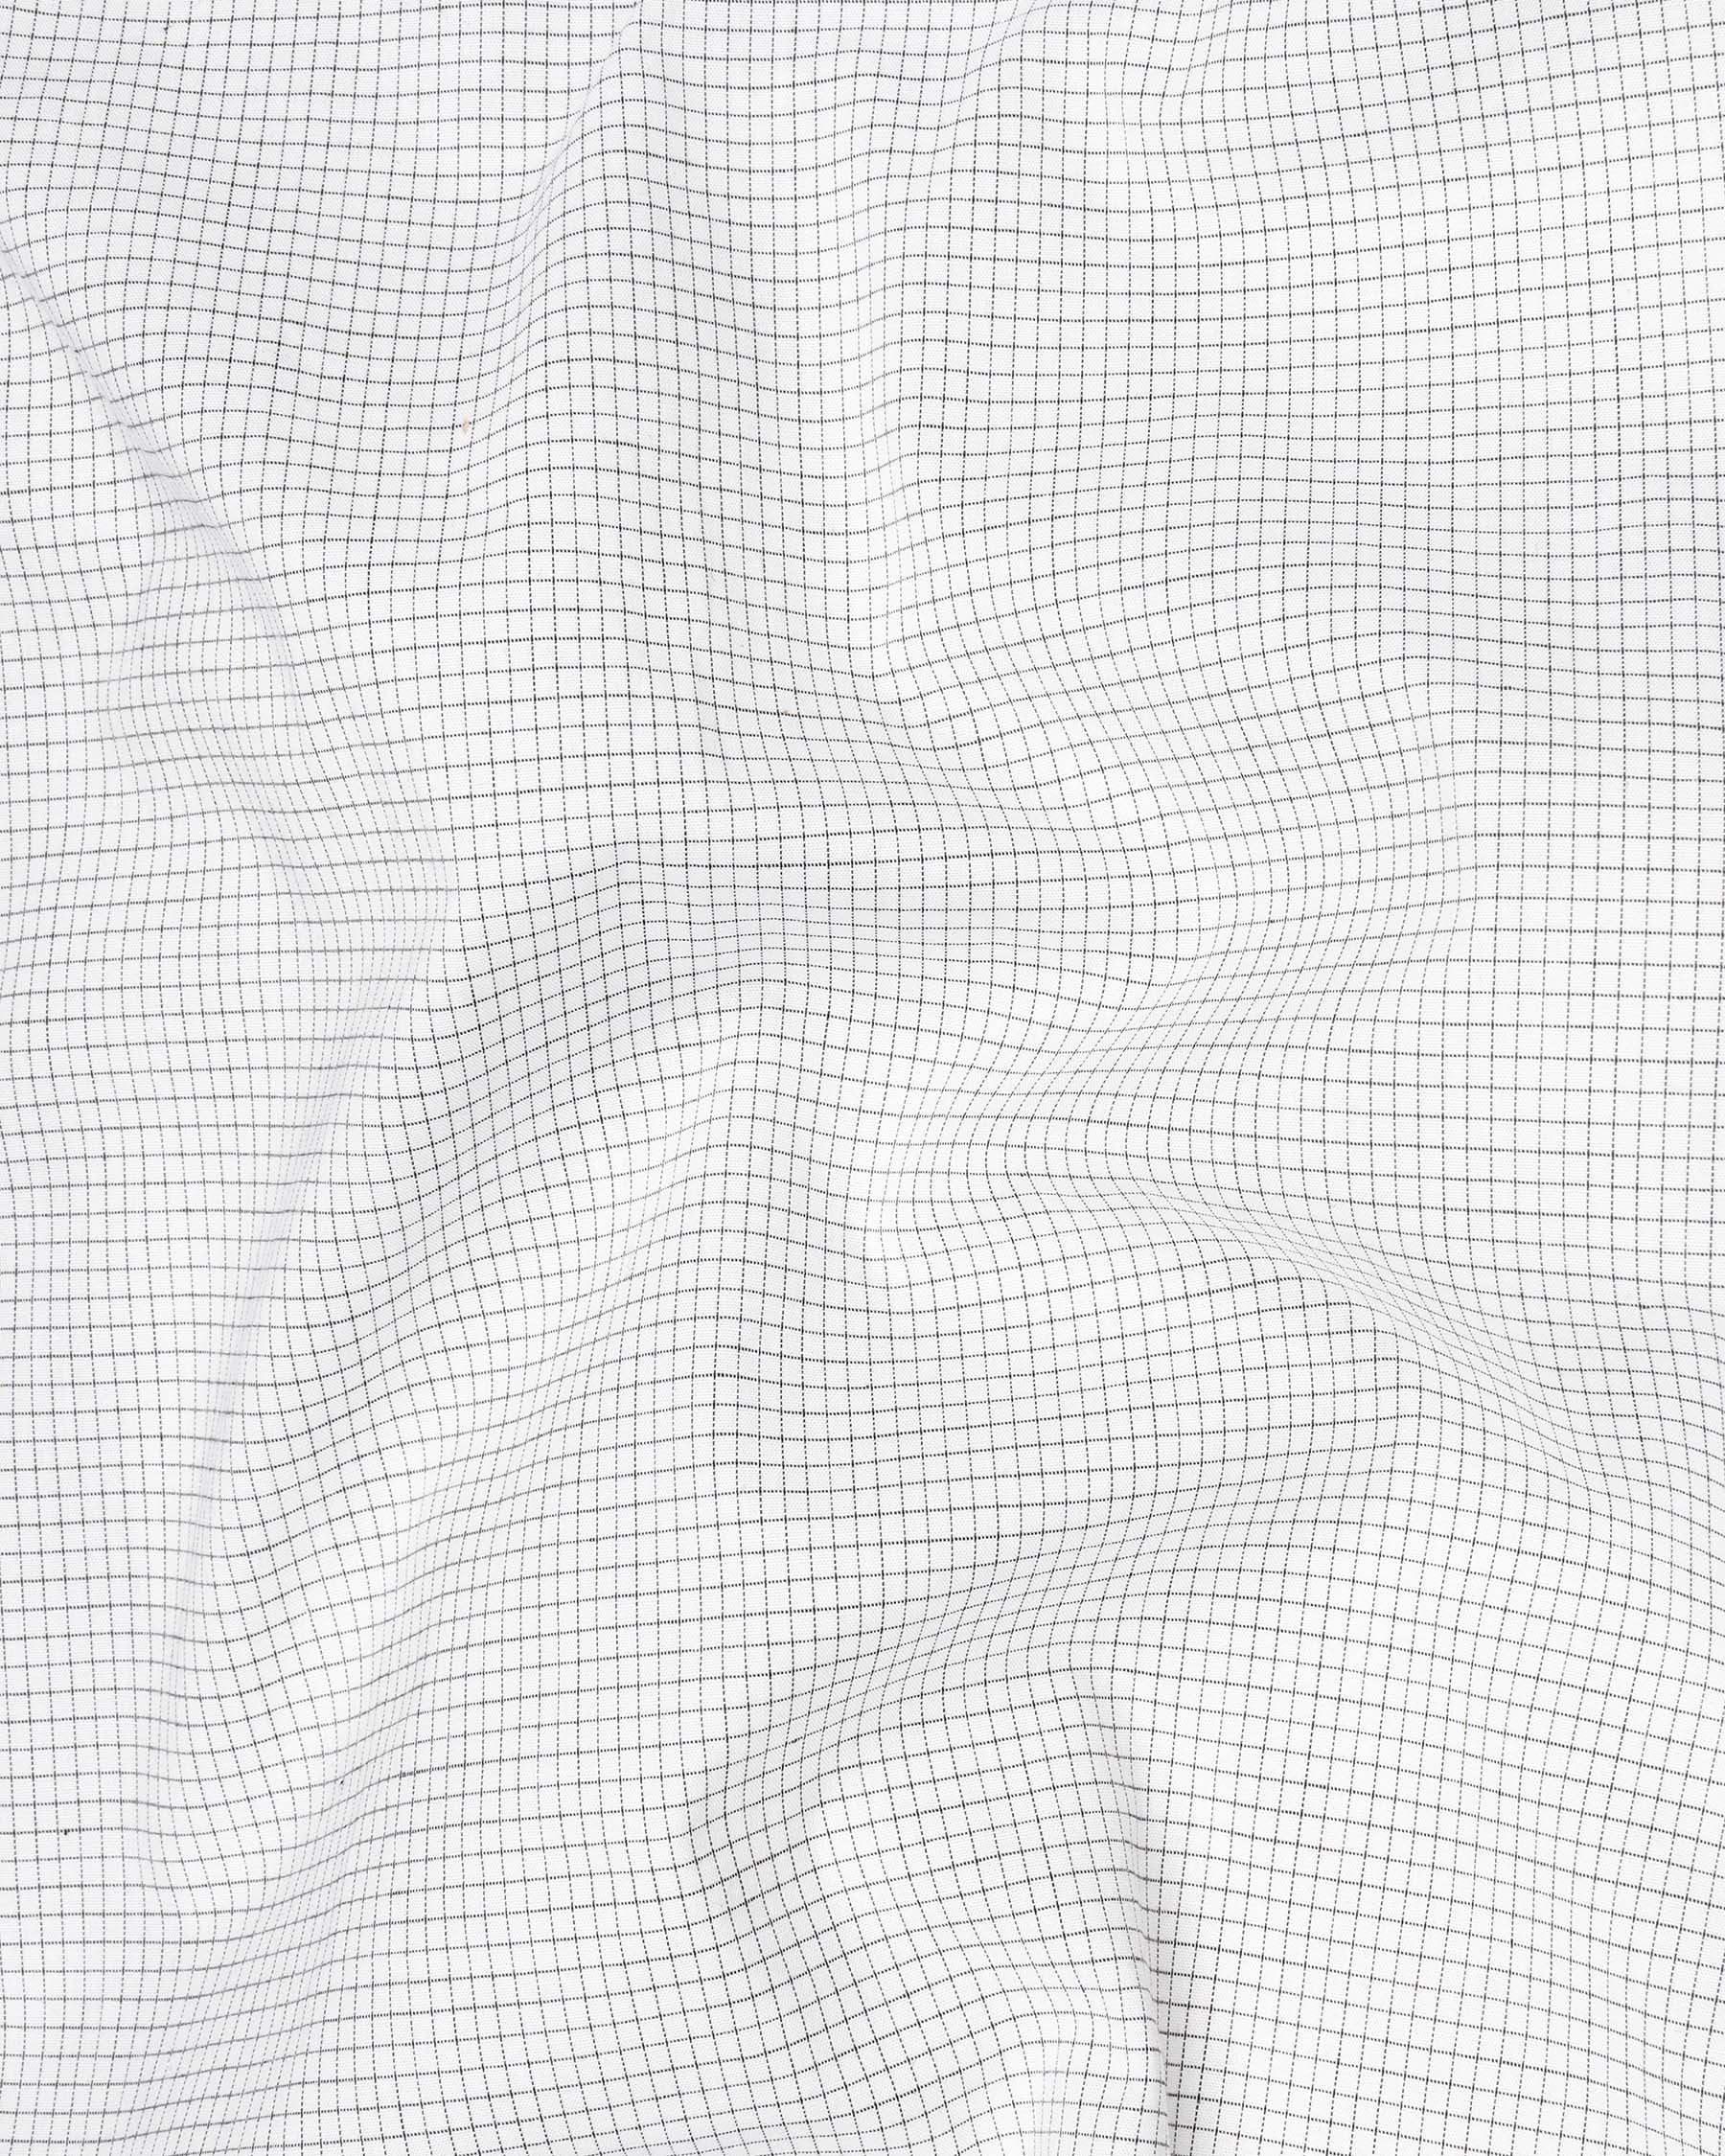 White with Black Micro Checkered Premium Cotton Shirt 6690-CA-38,6690-CA-38,6690-CA-39,6690-CA-39,6690-CA-40,6690-CA-40,6690-CA-42,6690-CA-42,6690-CA-44,6690-CA-44,6690-CA-46,6690-CA-46,6690-CA-48,6690-CA-48,6690-CA-50,6690-CA-50,6690-CA-52,6690-CA-52